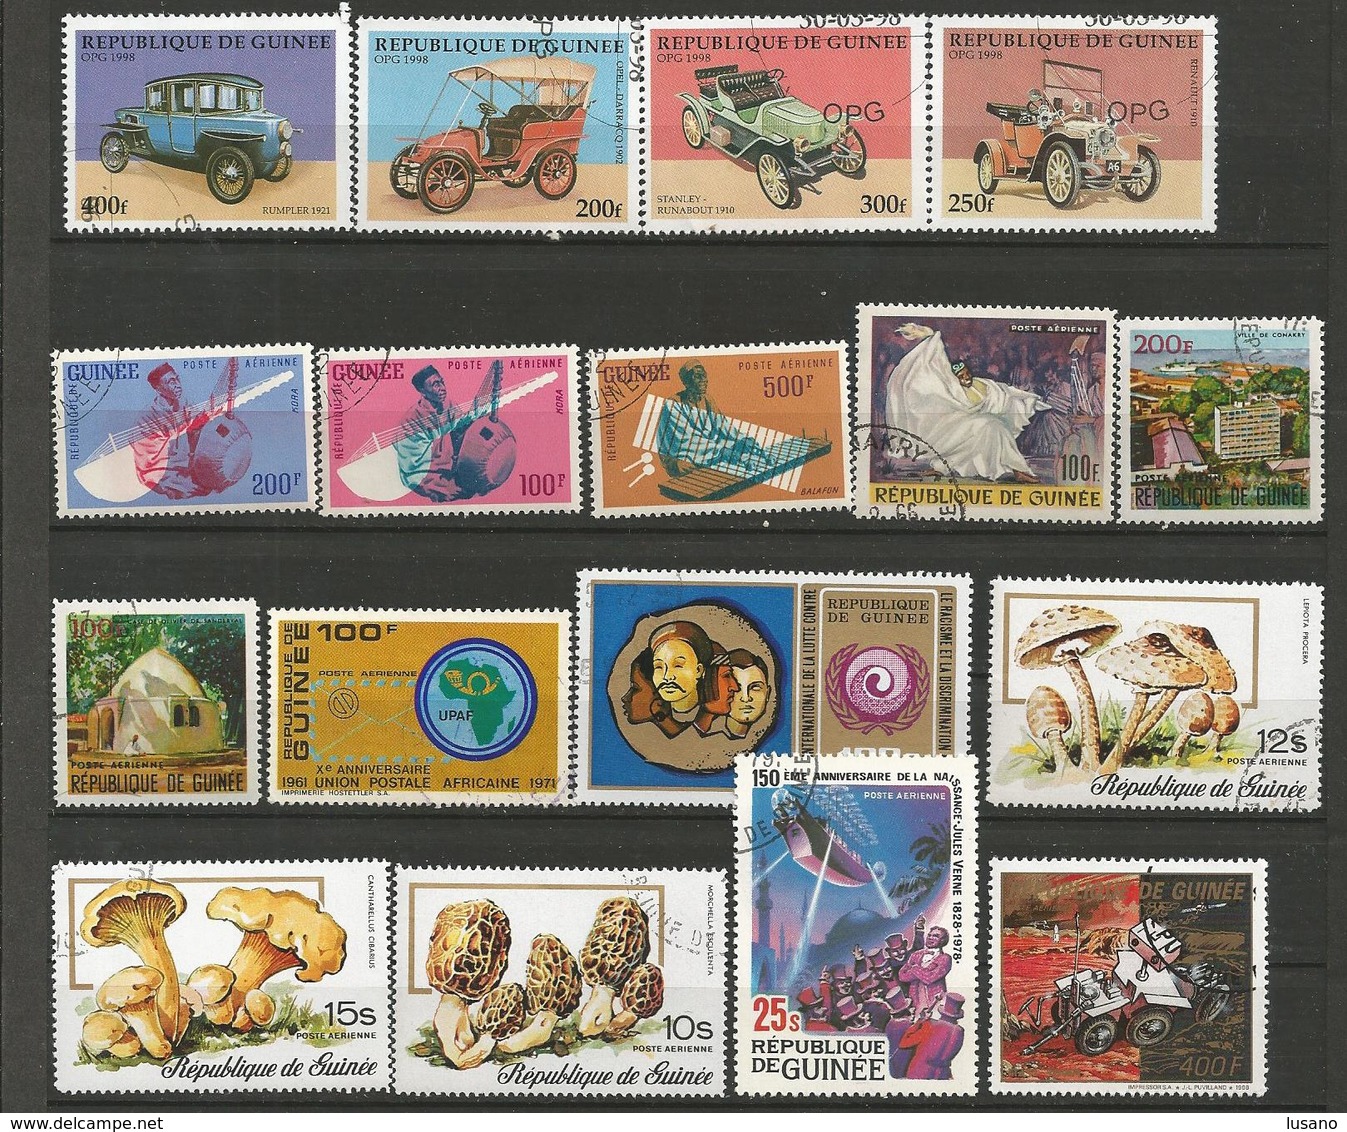 République de guinée - Lot de timbres oblitérés (avec quelques neufs)